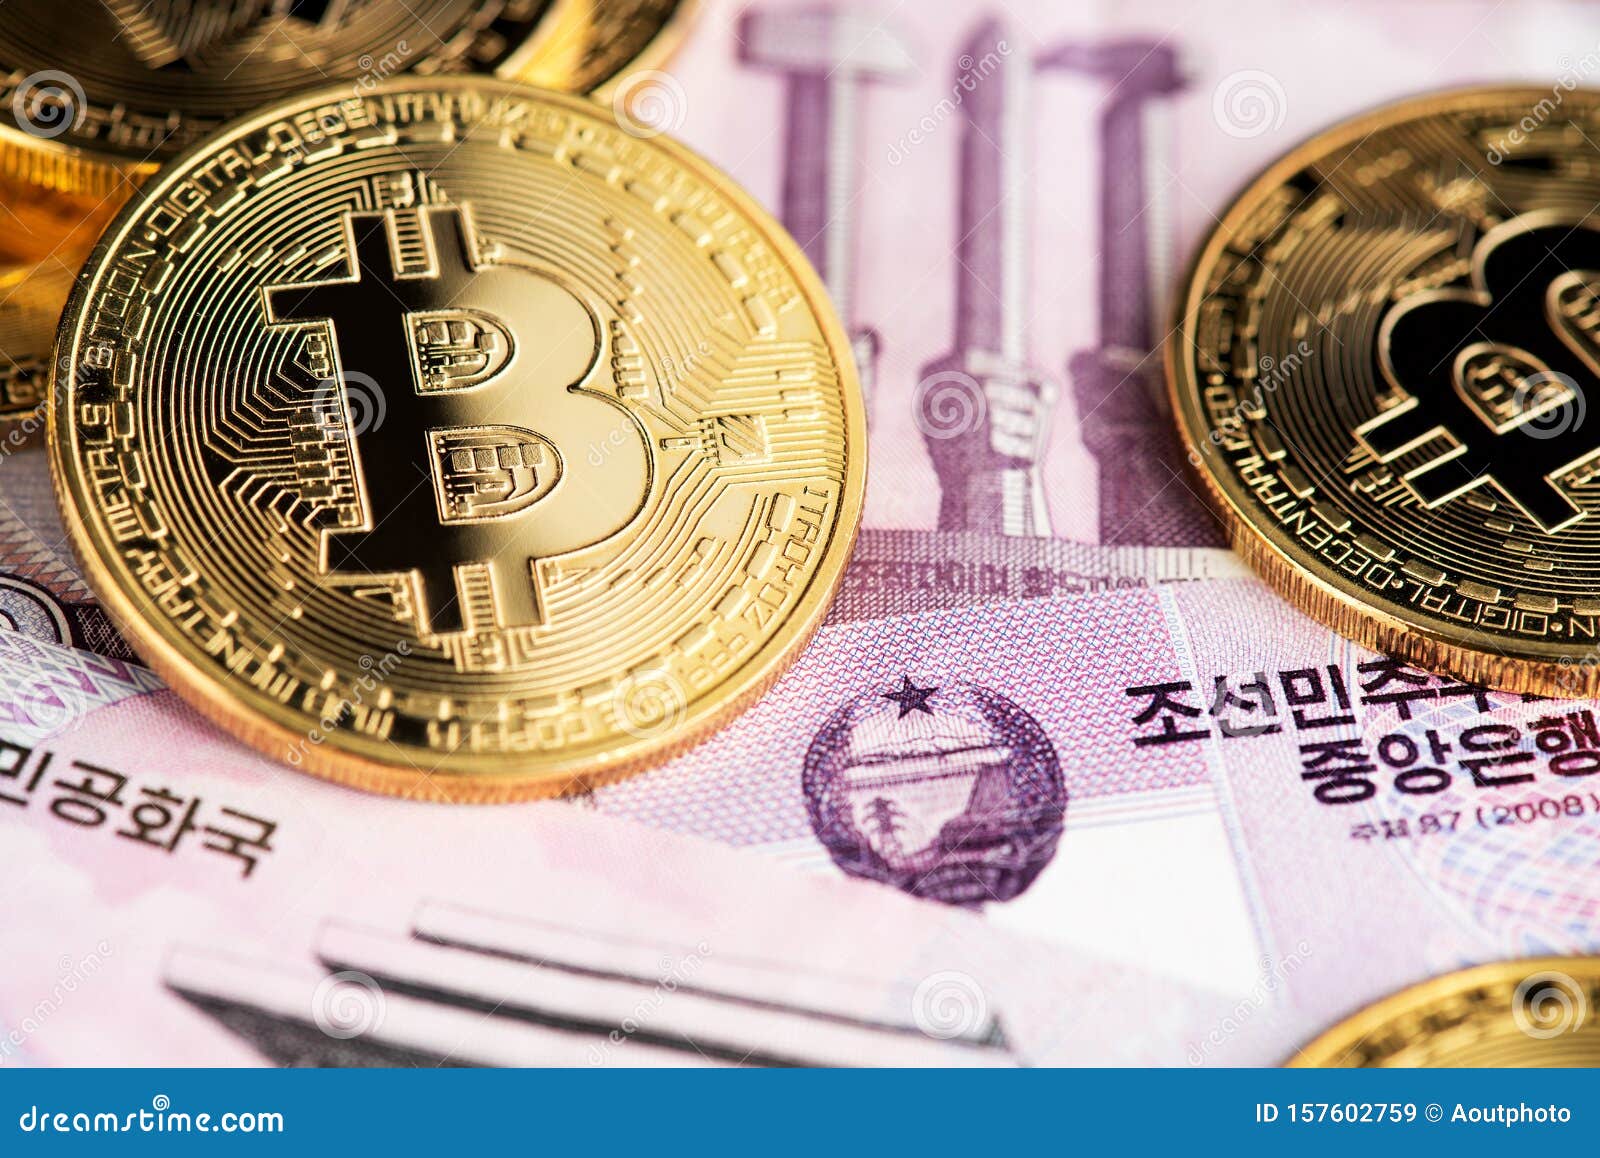 North korea crypto currency выгодный обмен валюты в севастополе